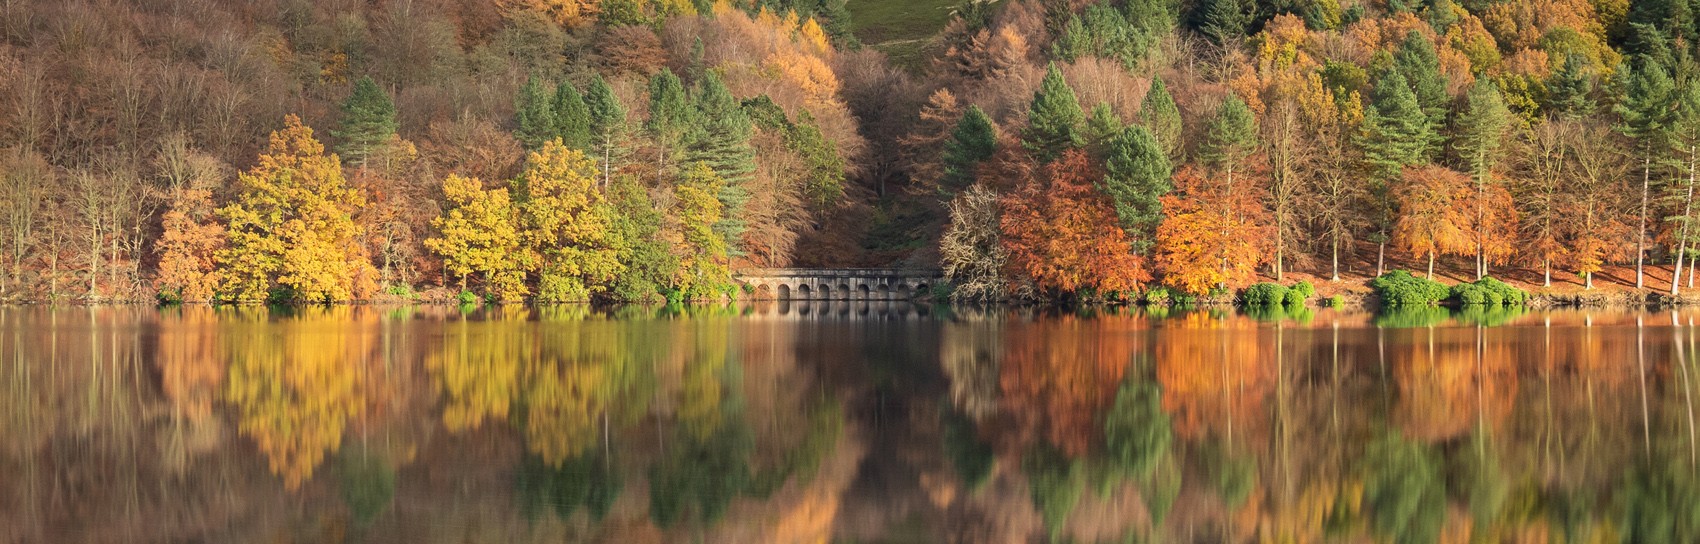 Autumn Reflections Derwent Reservoir. Photograph by MATT HILLIER